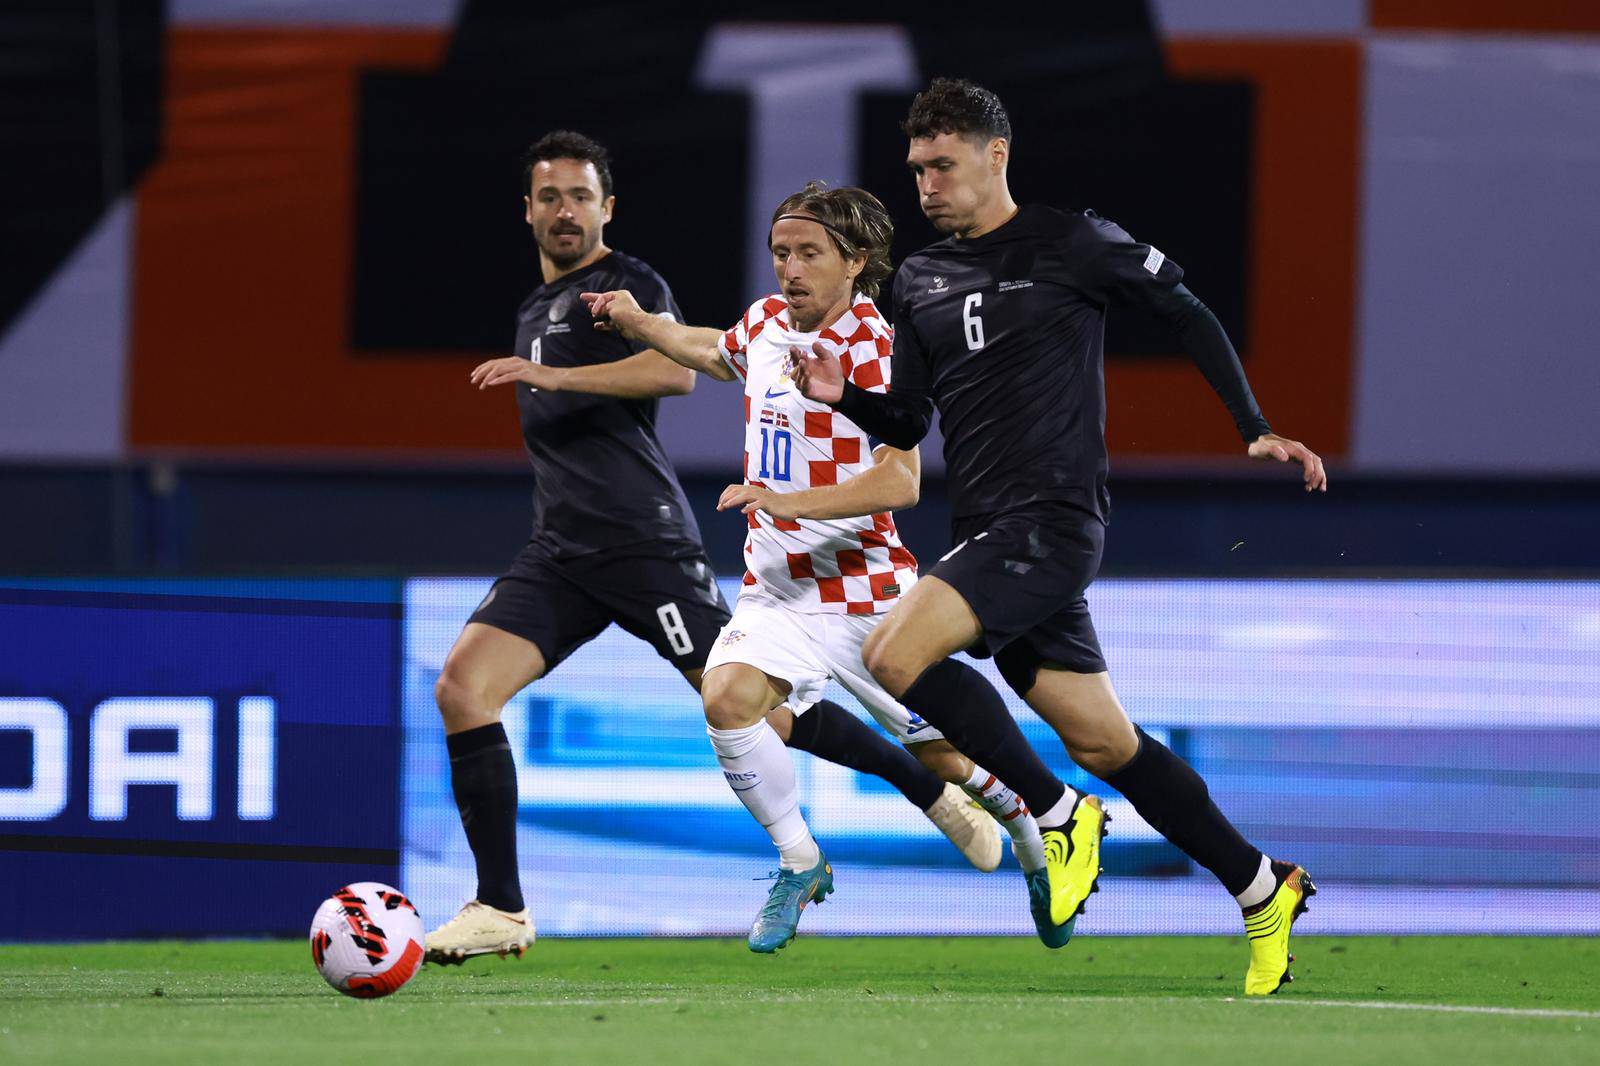 Susret Hrvatske i Danske u 5. kolu Lige nacija